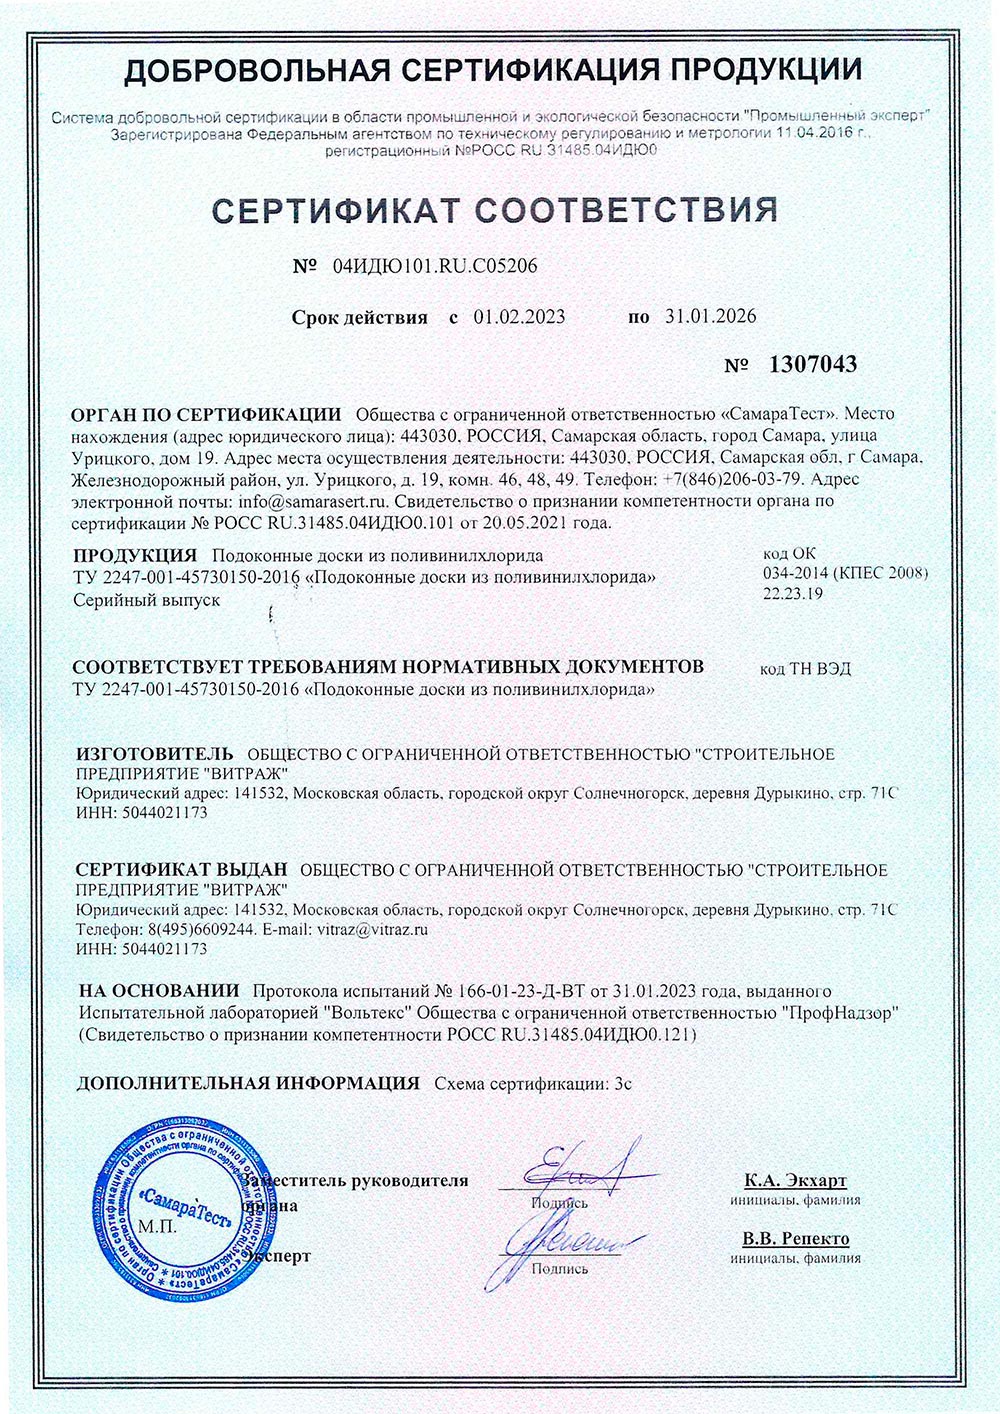 Кристаллит подоконники, сертификат соответствия, 31.01.2026